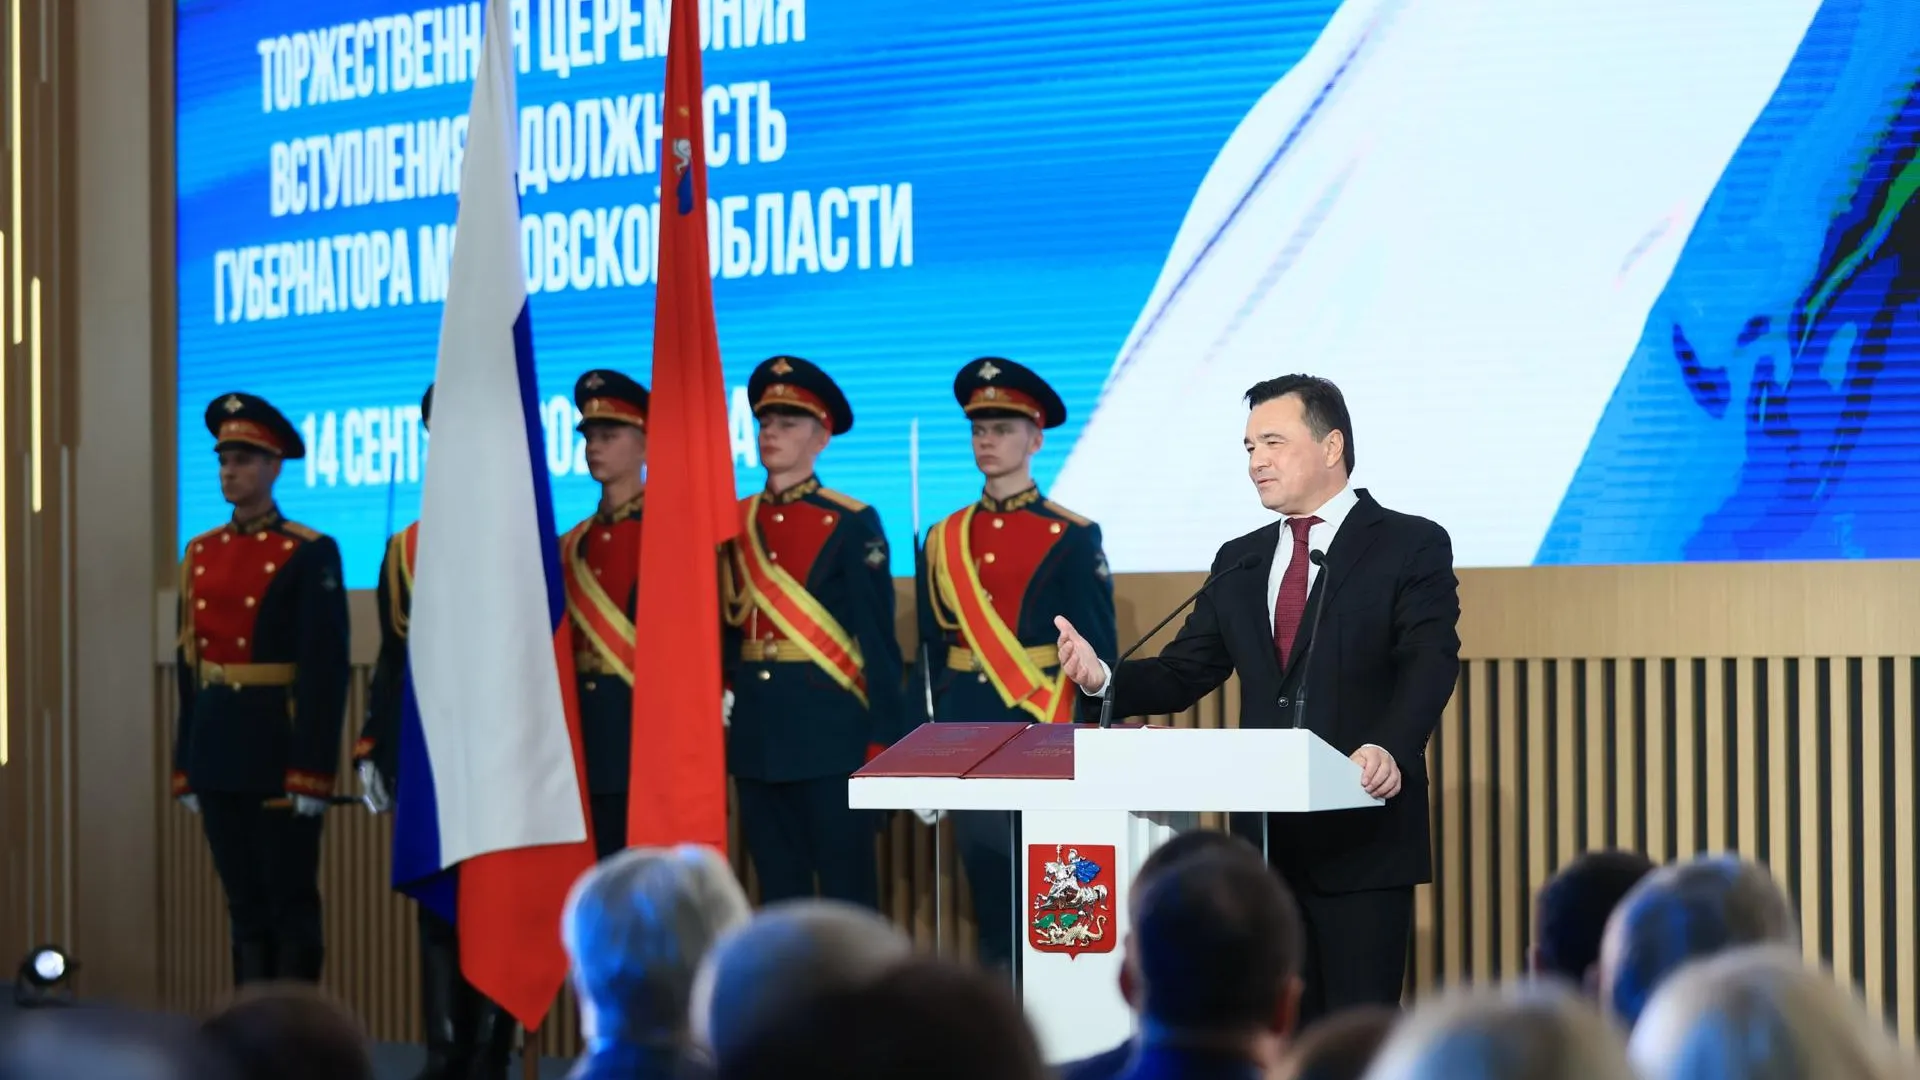 Станислав Каторов: Команда губернатора обеспечивает хороший темп перемен во всех сферах